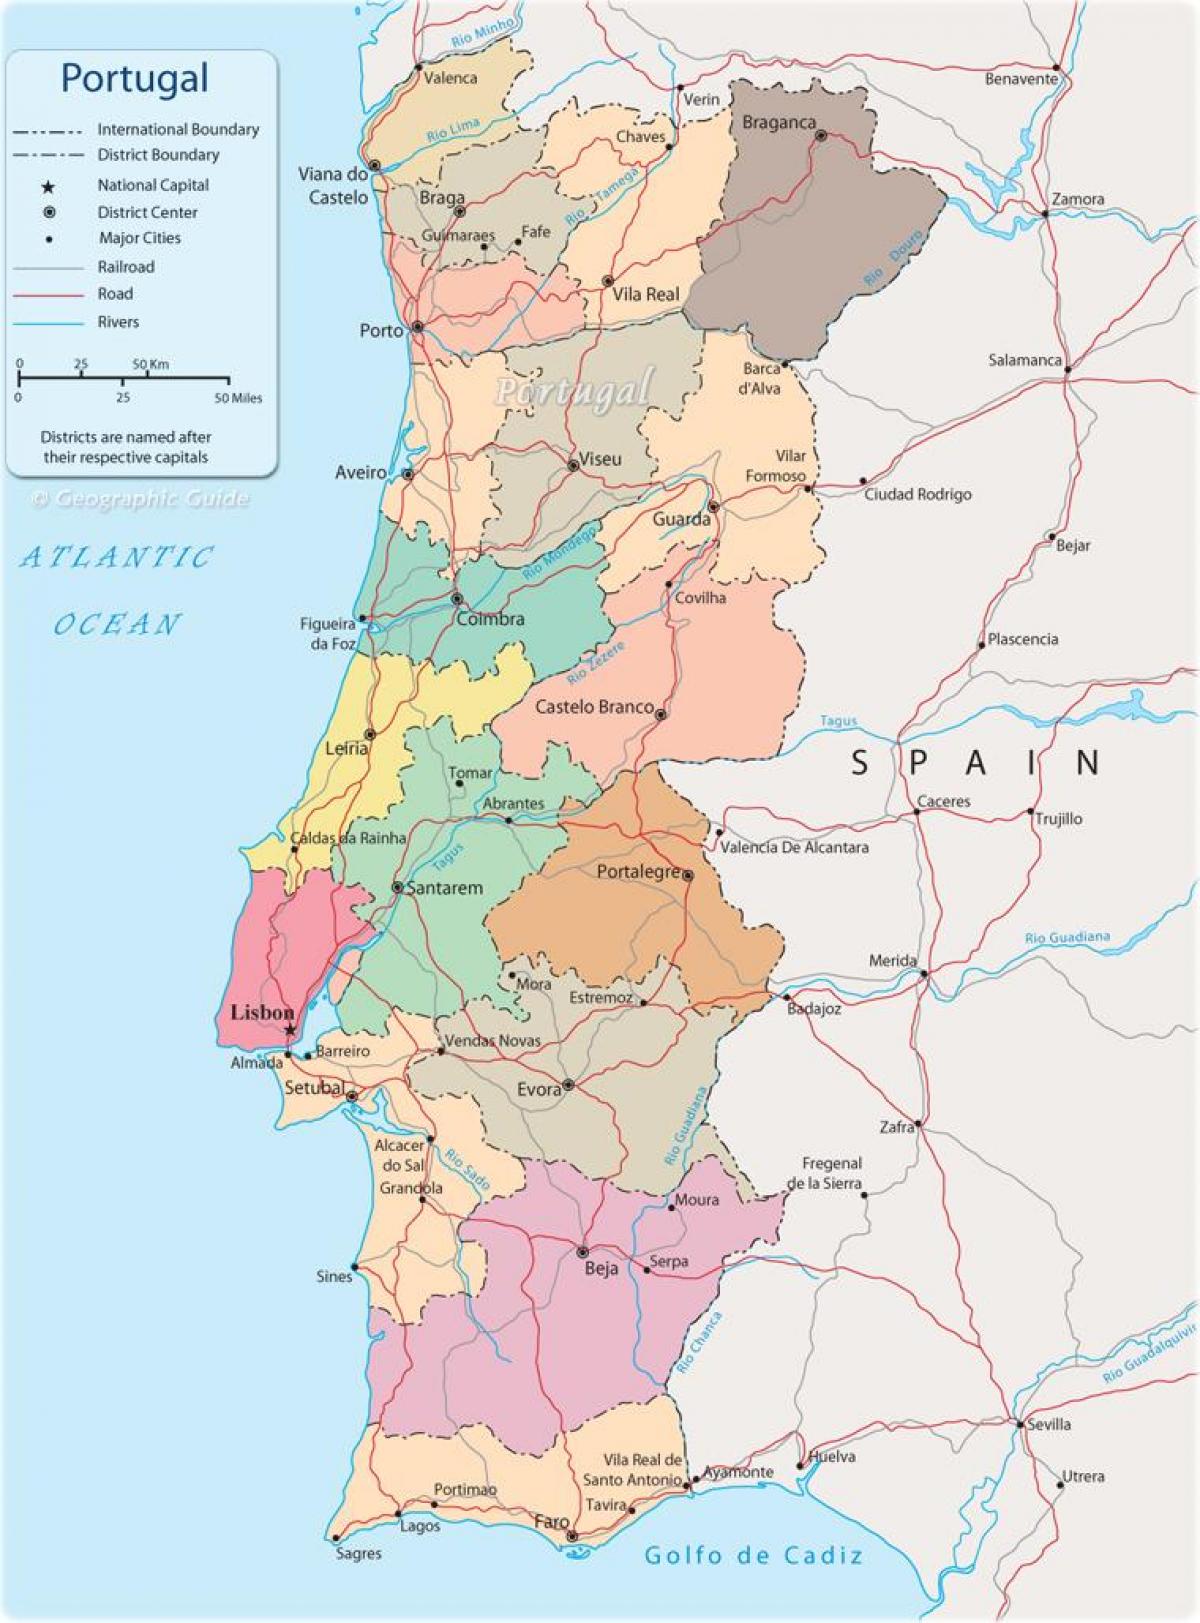 faro portugali kartta Portugalin poliittinen kartta   Poliittinen kartta Portugali  faro portugali kartta